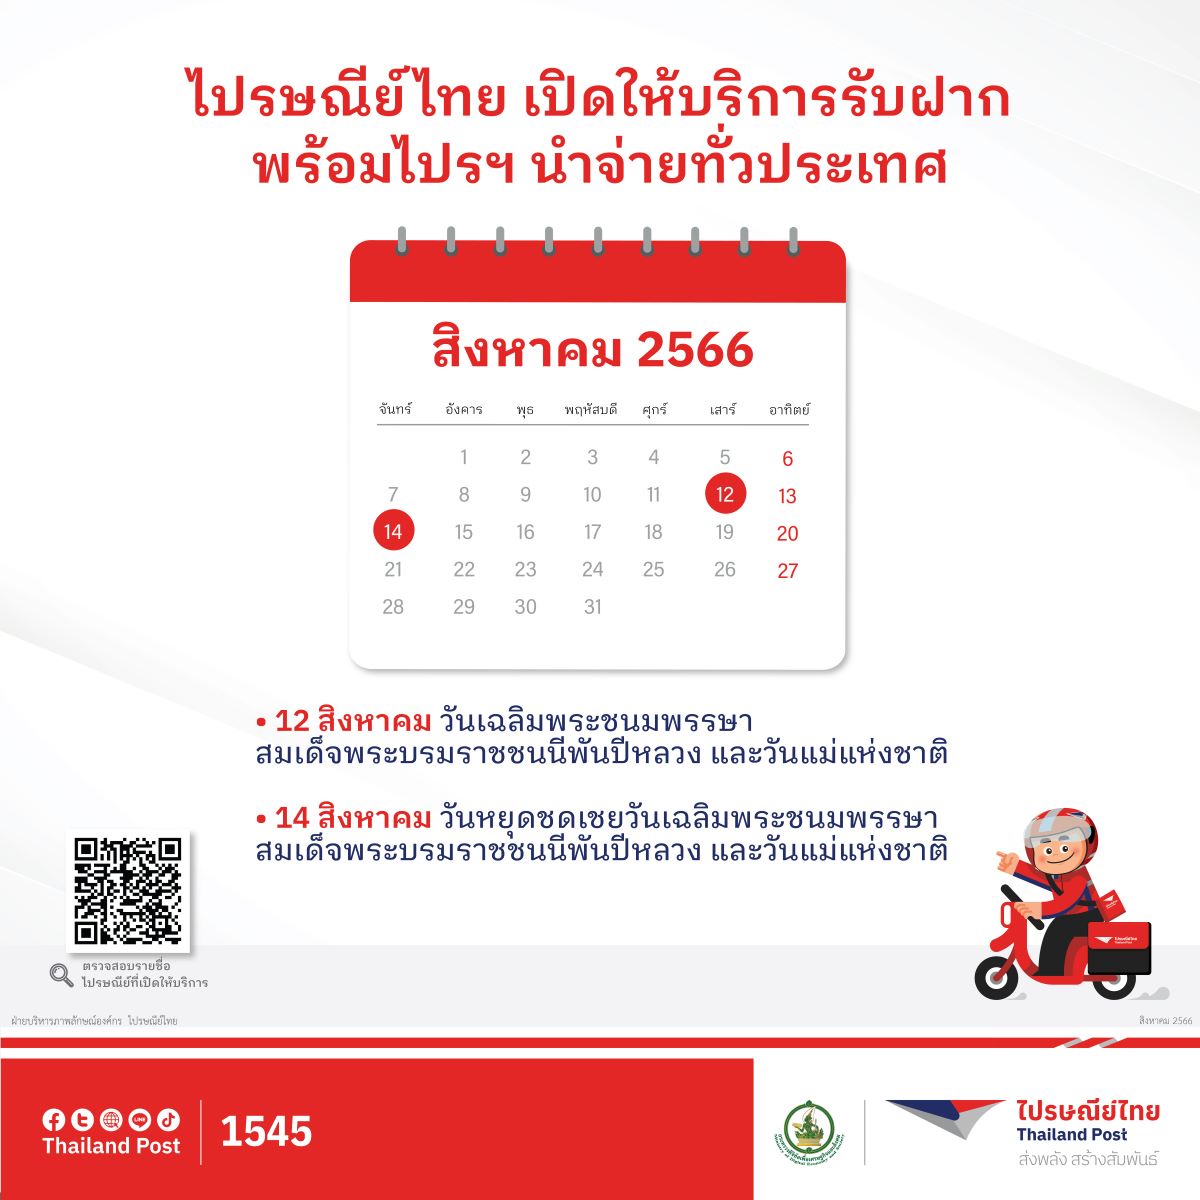 ไปรษณีย์ไทยเปิดให้บริการช่วงวันหยุดต่อเนื่อง 12 - 14 สิงหาคม 2566 รับฝาก และนำจ่ายตามปกติทุกแห่งทั่วประเทศ